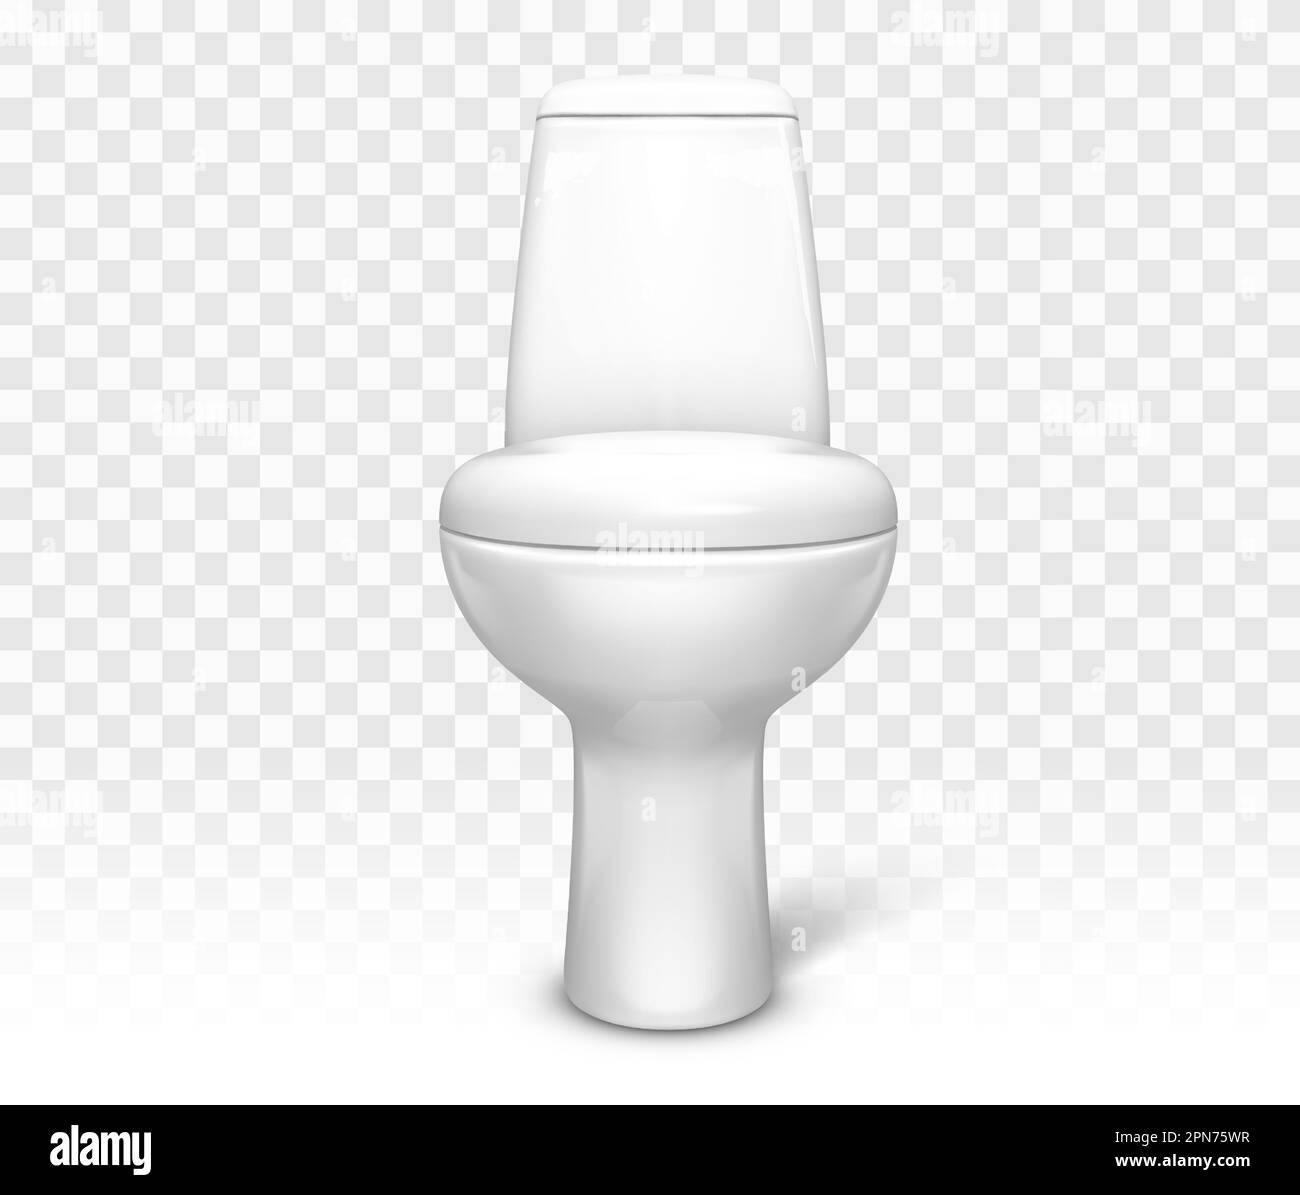 Illustration De Piston De Toilette 3d Avec Un Design Isolé De Fond  Transparent